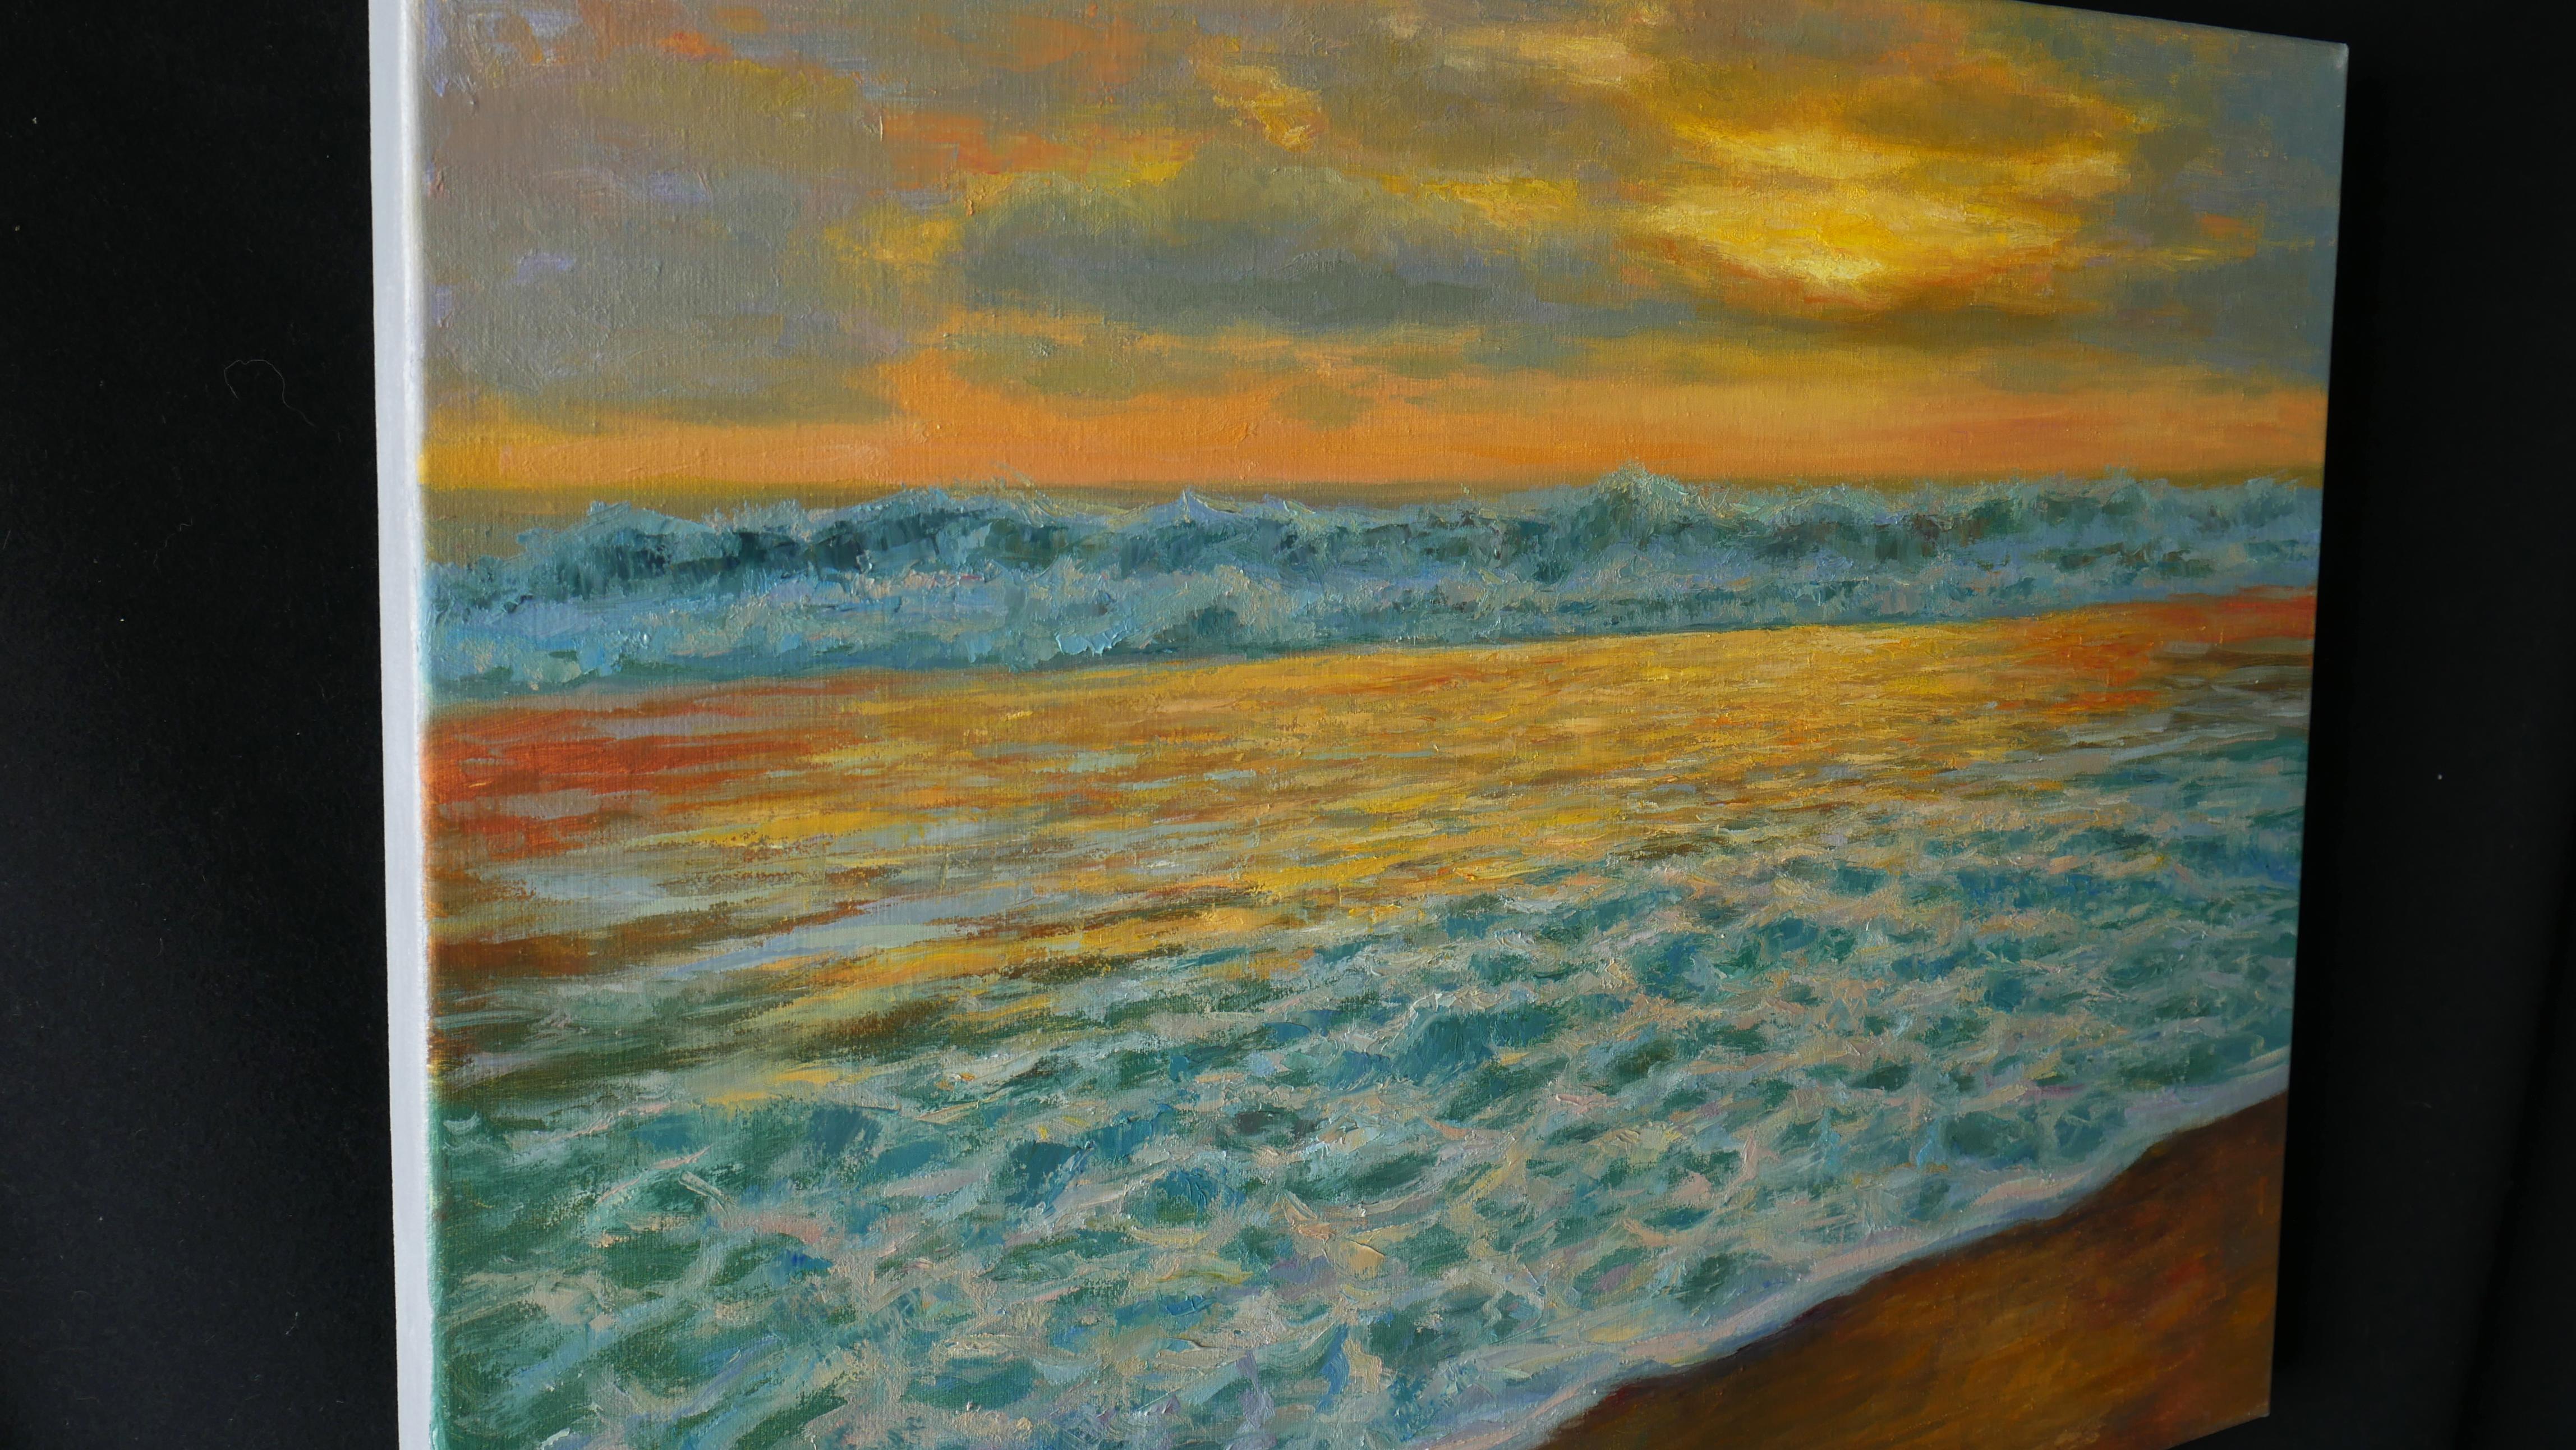 Beautiful Sea Sunset - Painting by Nikolaj Dmitriev